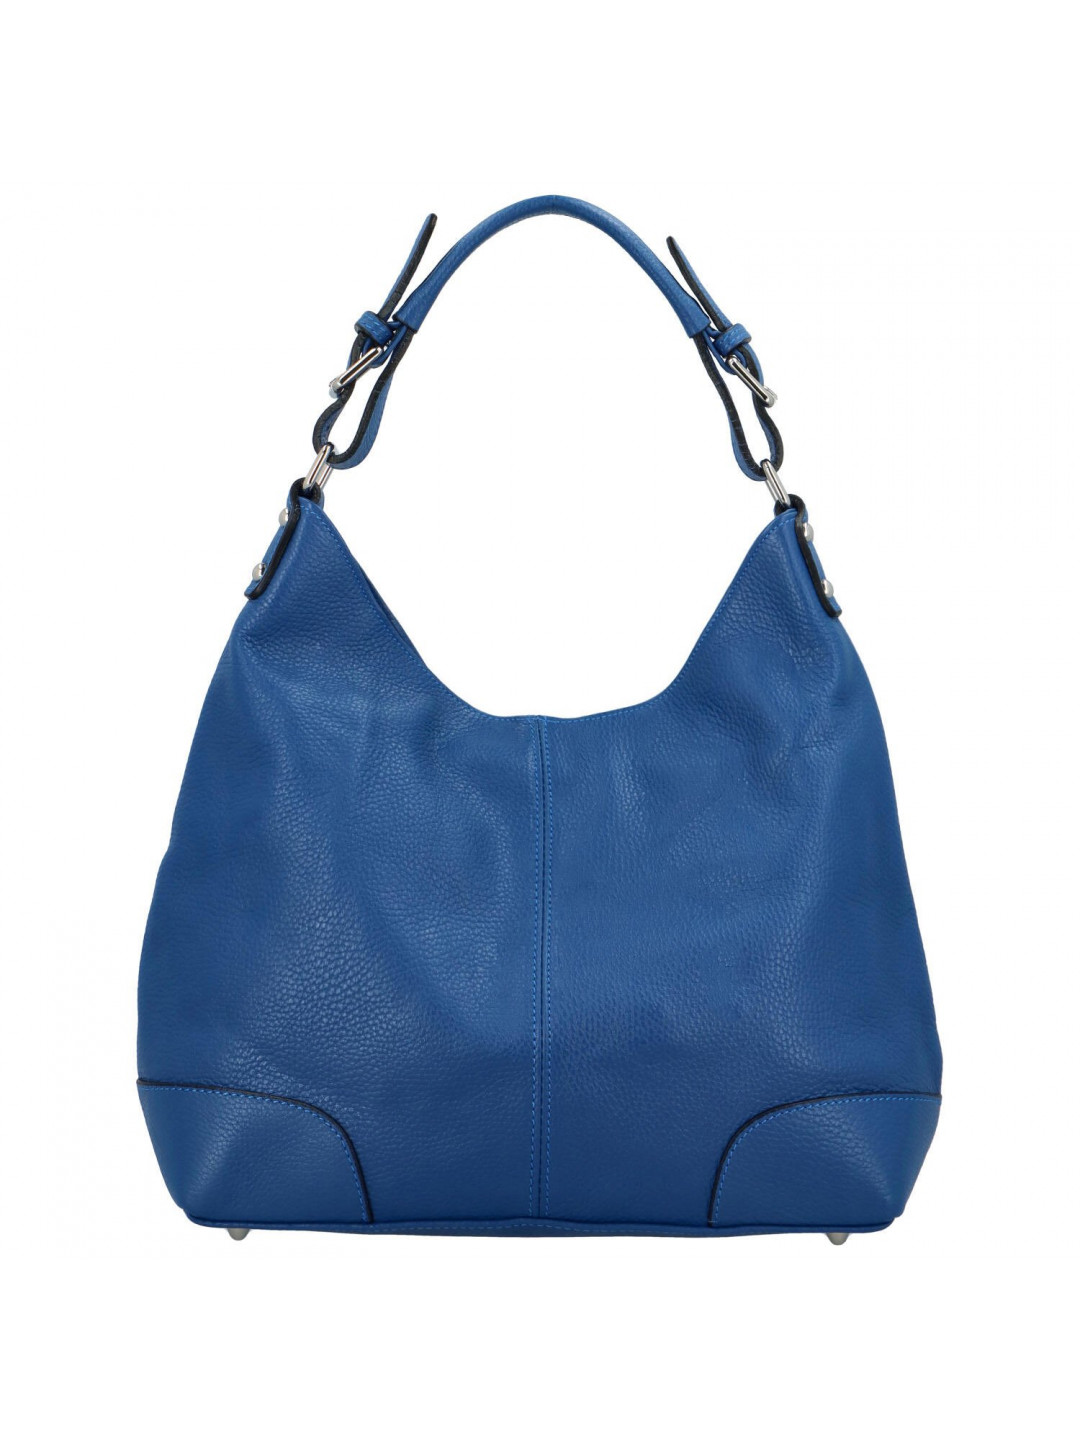 Dámská kožená kabelka přes rameno modrá – Delami Lucisa